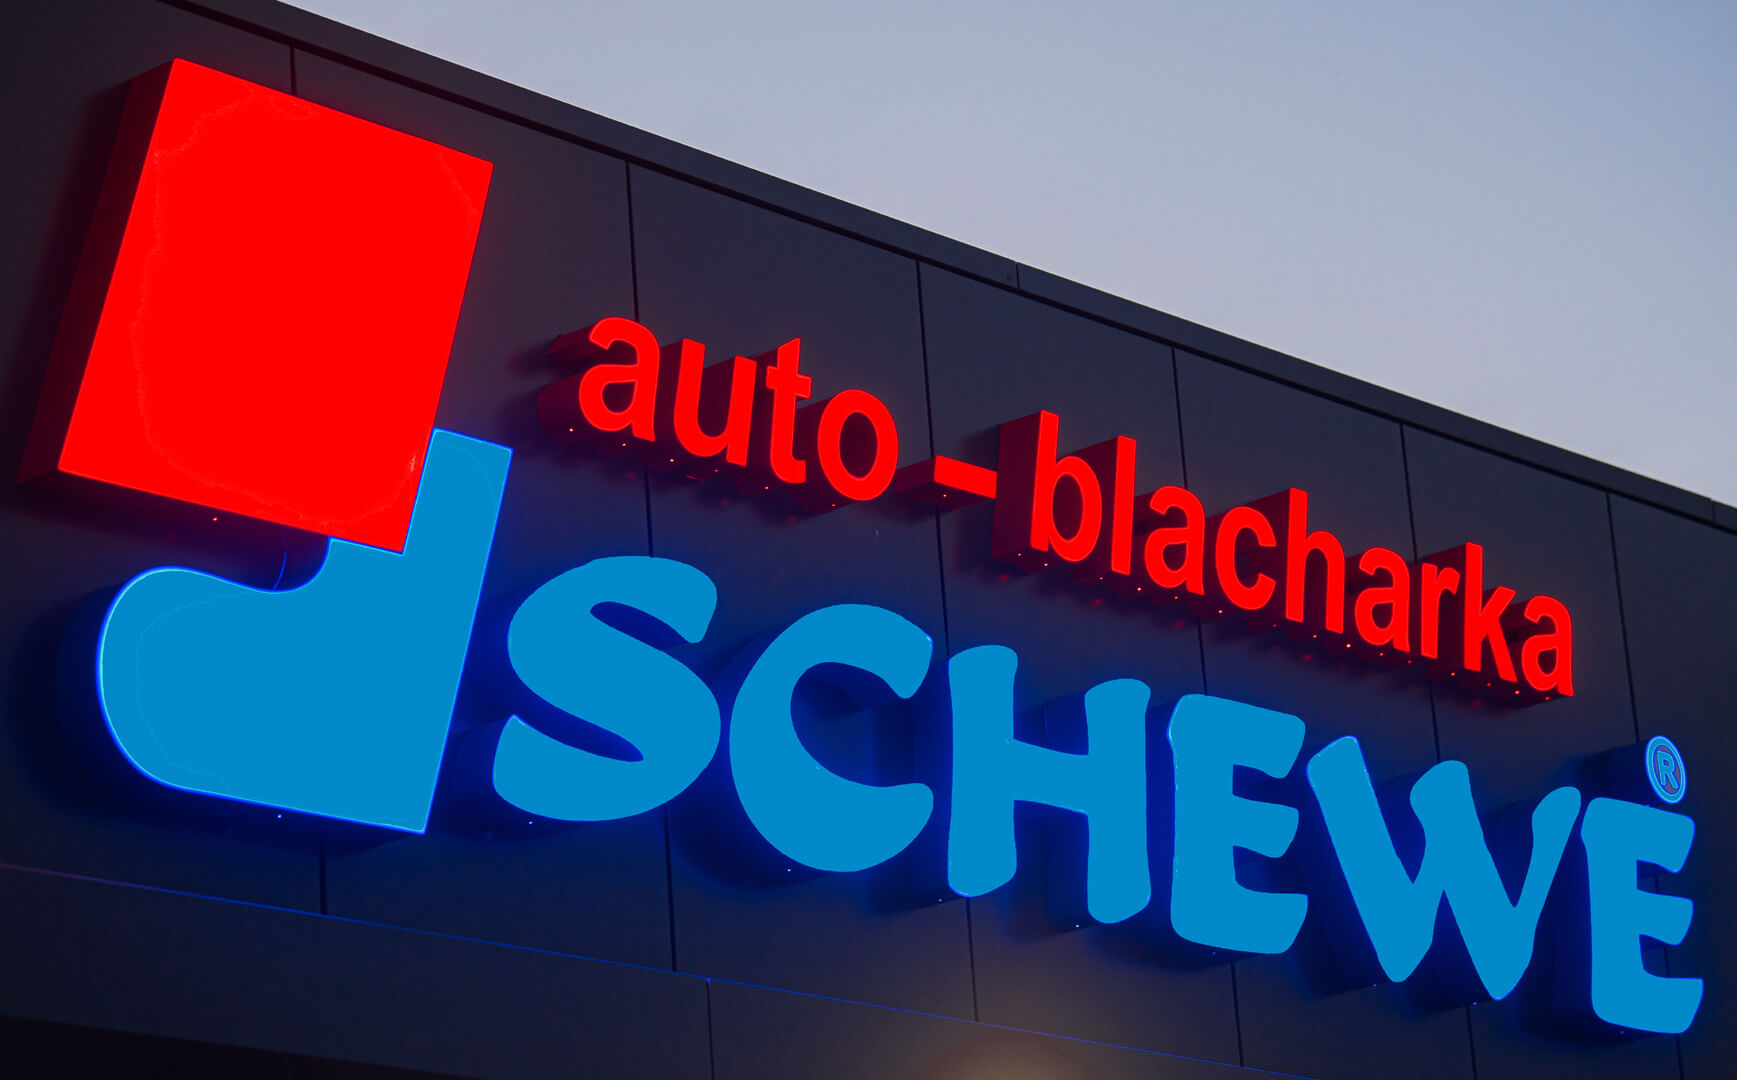 Auto blacharka Schewe - 3D-LED-Buchstaben, Front- und Seitenbeleuchtung aus Plexiglas.